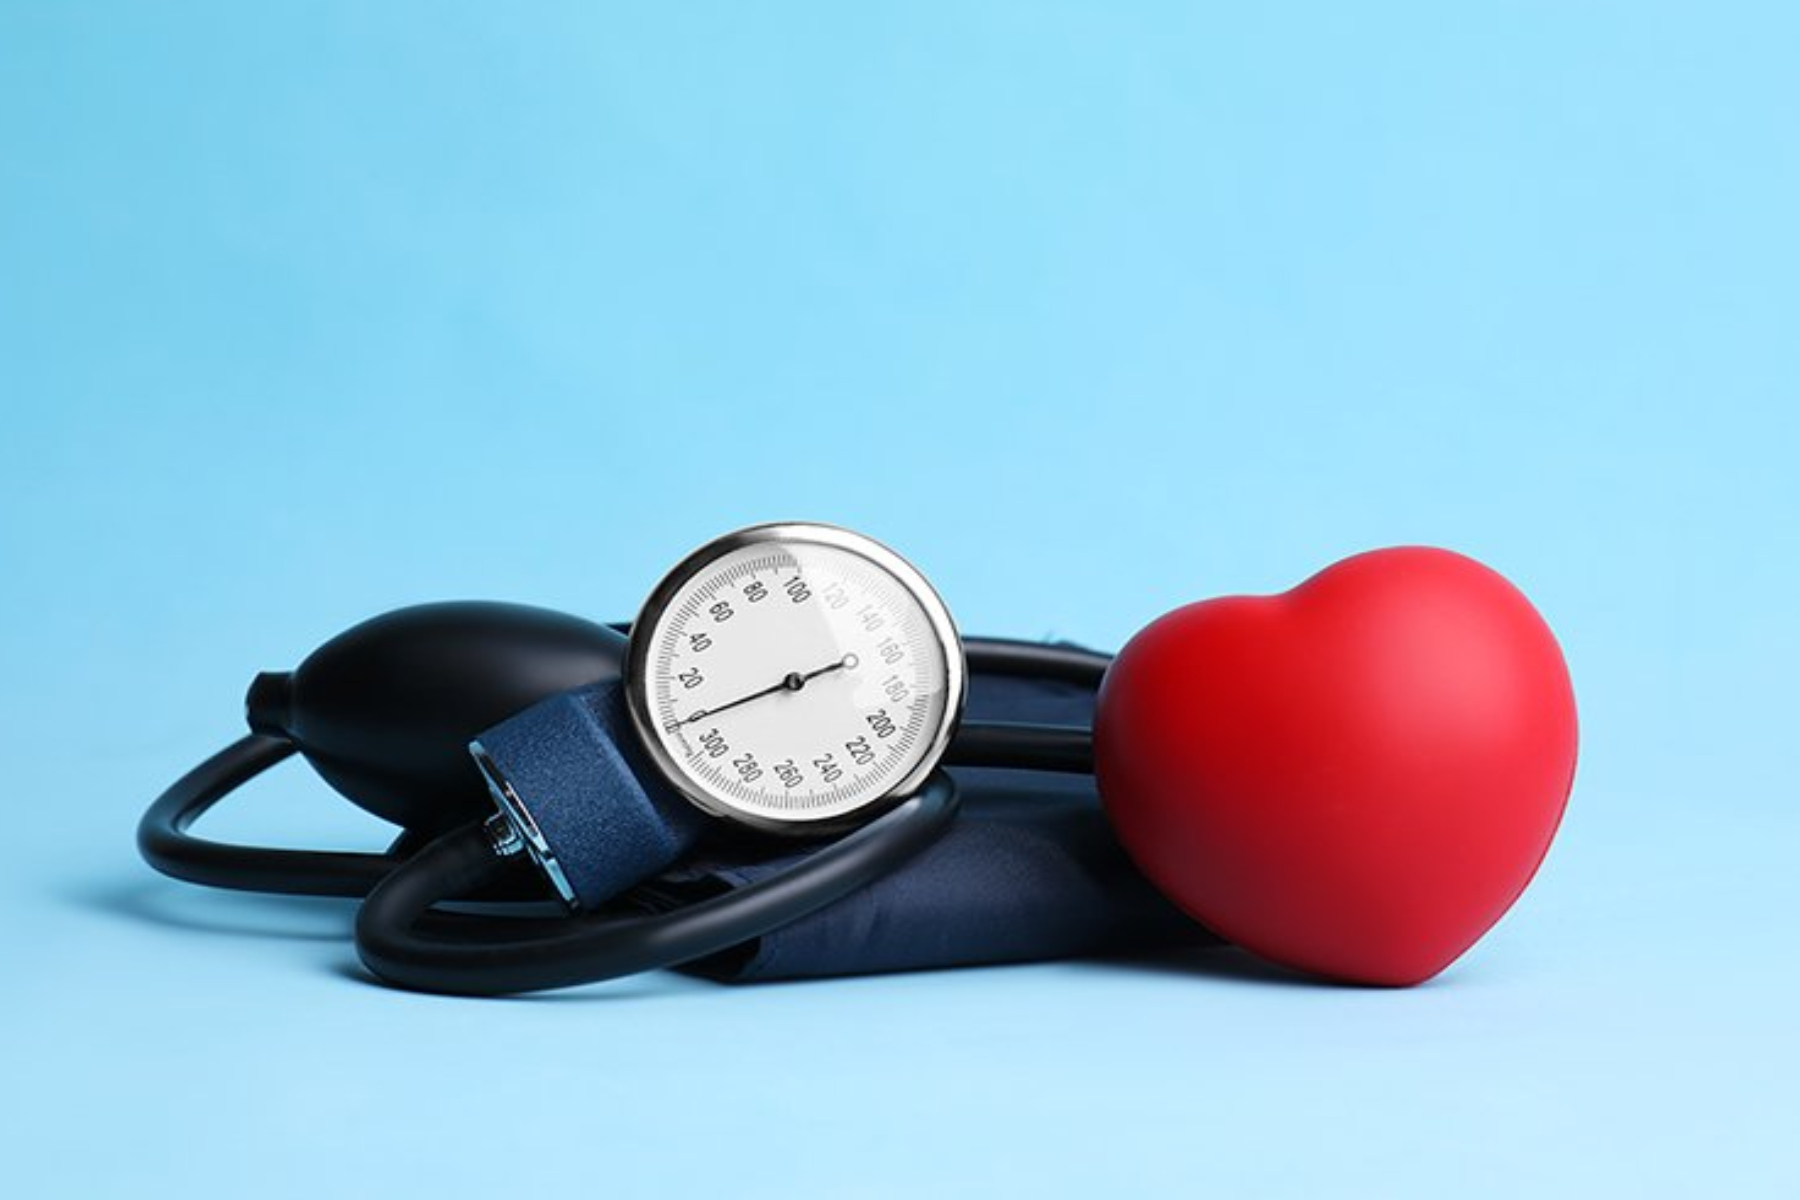 Πίεση: Πώς η αρτηριακή πίεση μπορεί να επηρεάσει την υγεία;